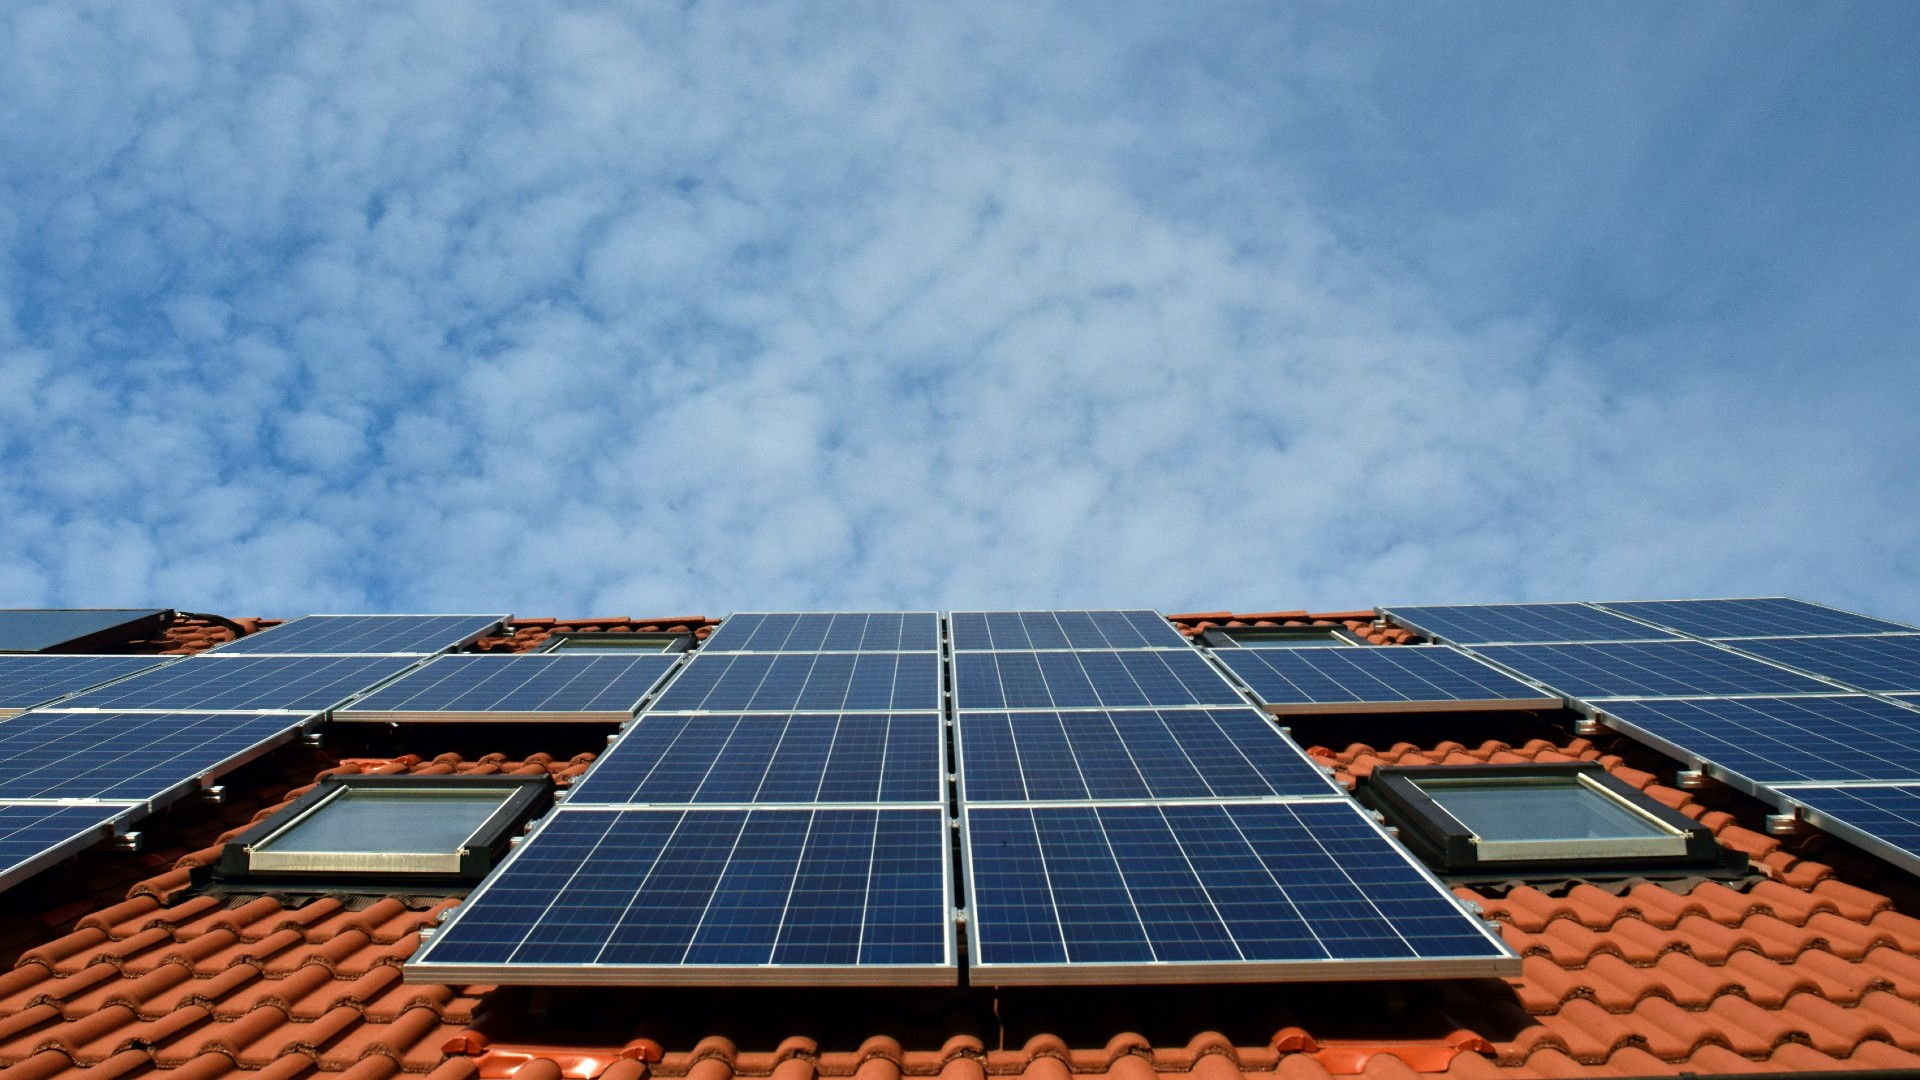 detrazioni fotovoltaico 2021 per pannelli solari